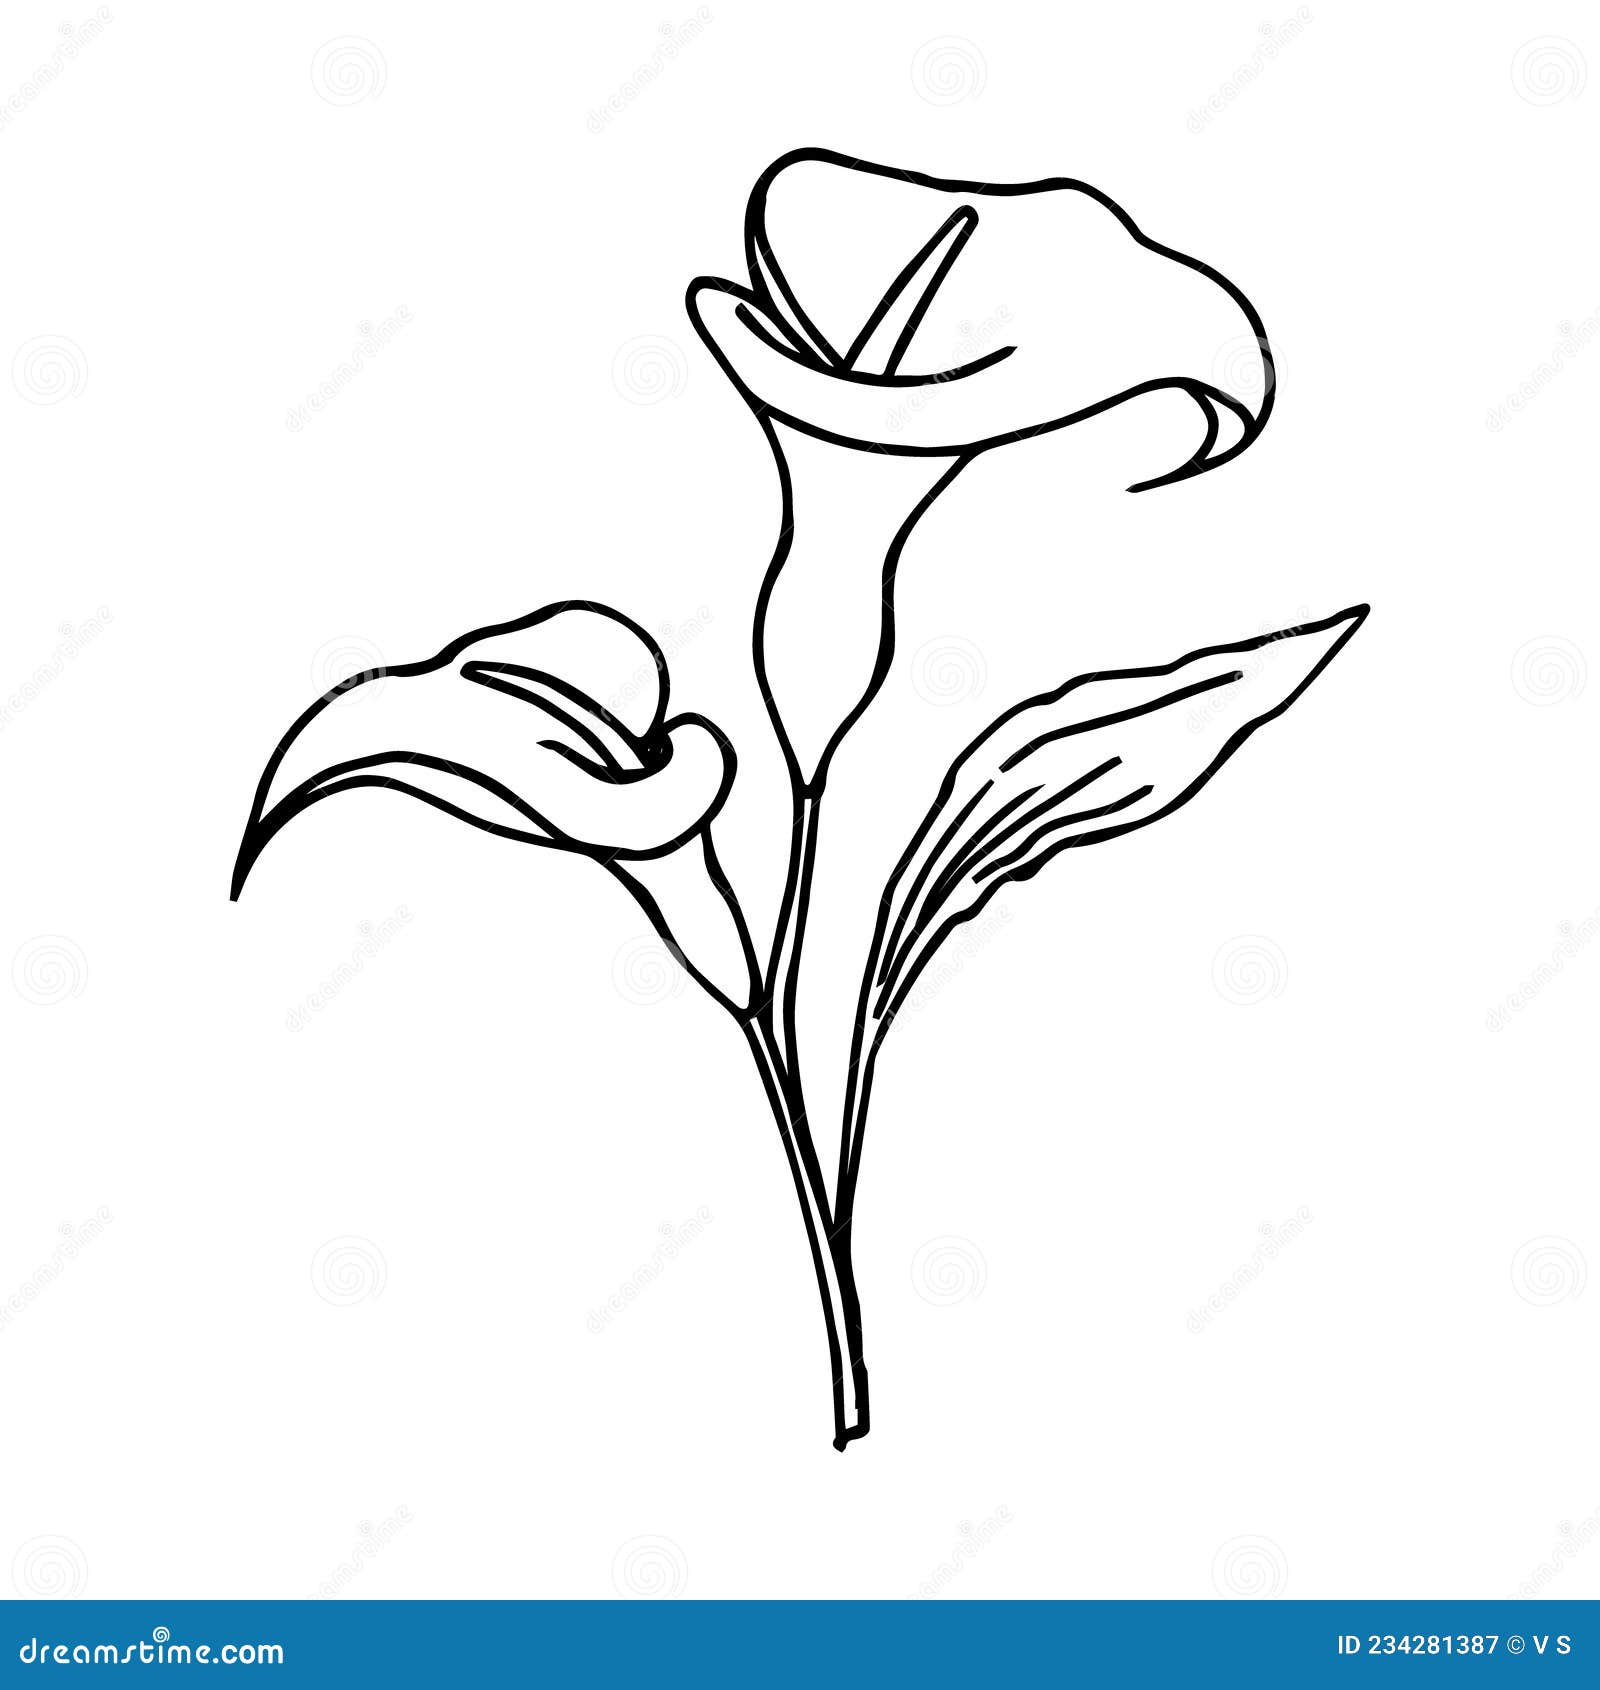 Illustration, Sketch, Contour Bouquet of Calla Lilies Flowers, Black ...